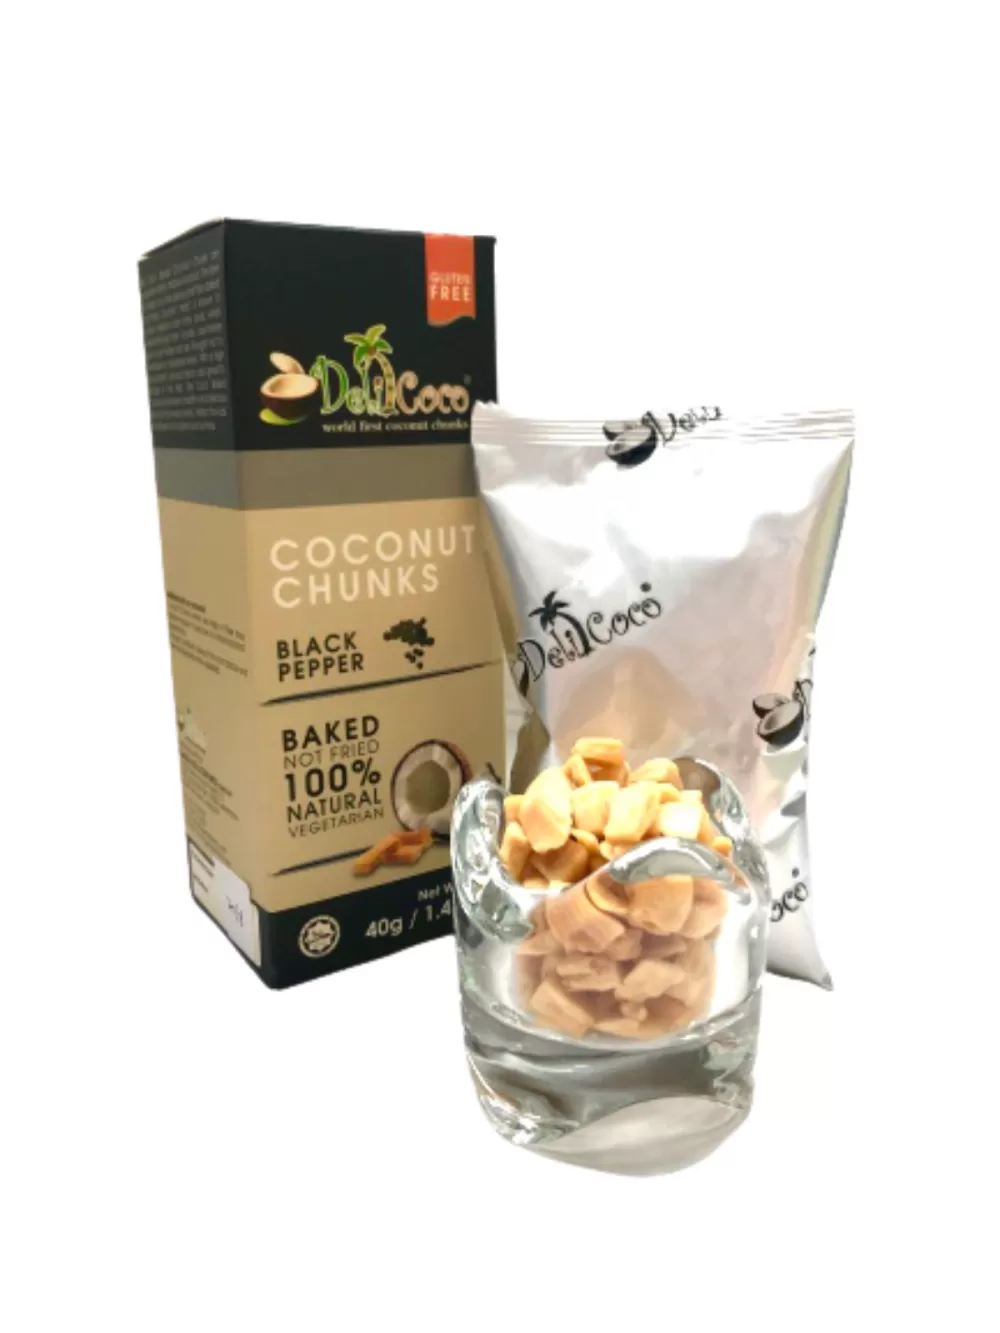 Delicoco Coconut Chunks Black Pepper Crunch D/Cut box (60 grams)